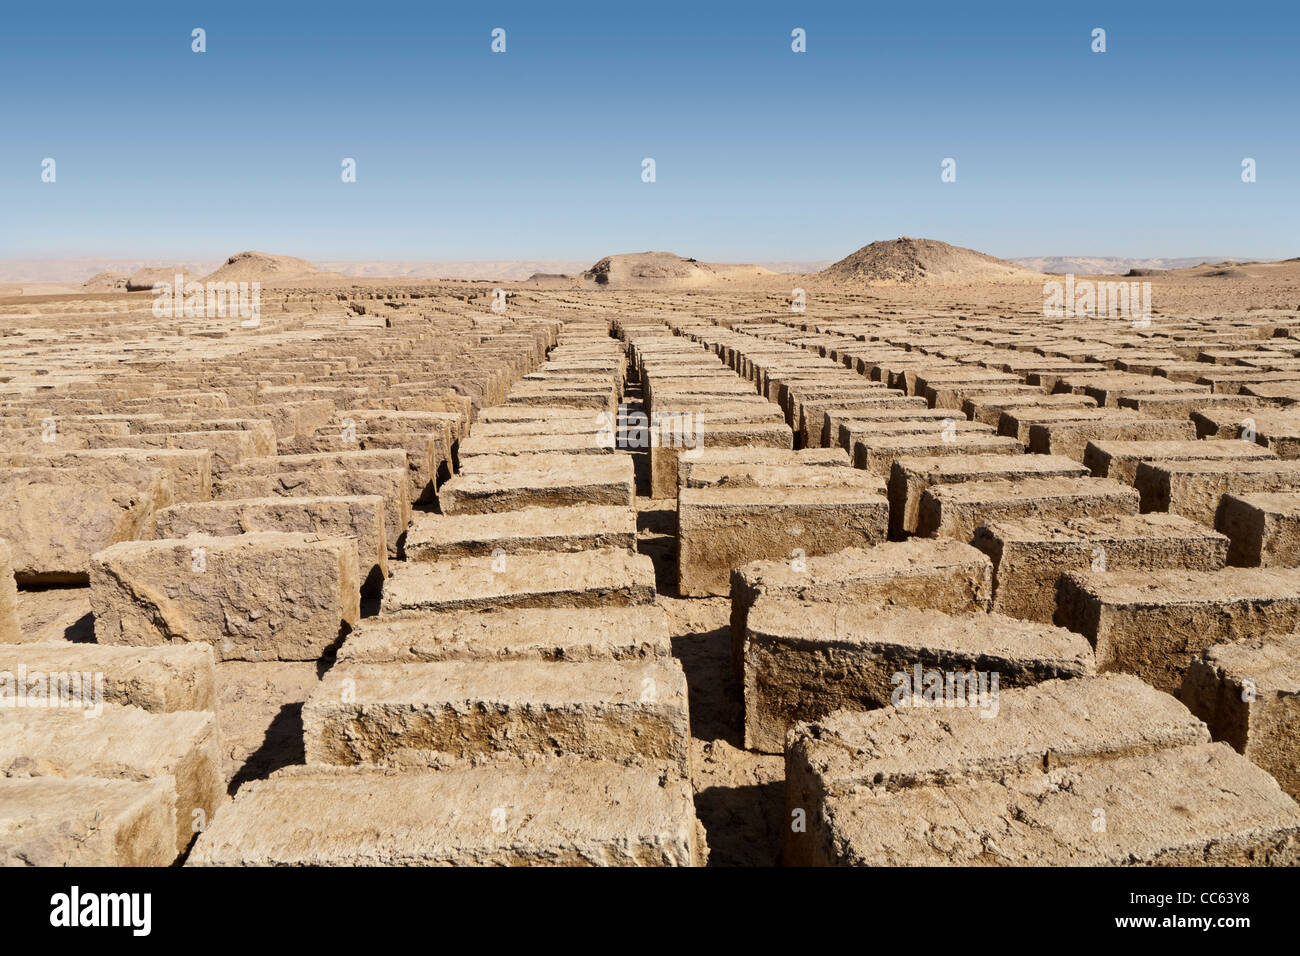 Neonata mattoni di fango essendo realizzato presso l'antico sito di Dush, a sud di Kharga Oasis, deserto occidentale d'Egitto Foto Stock